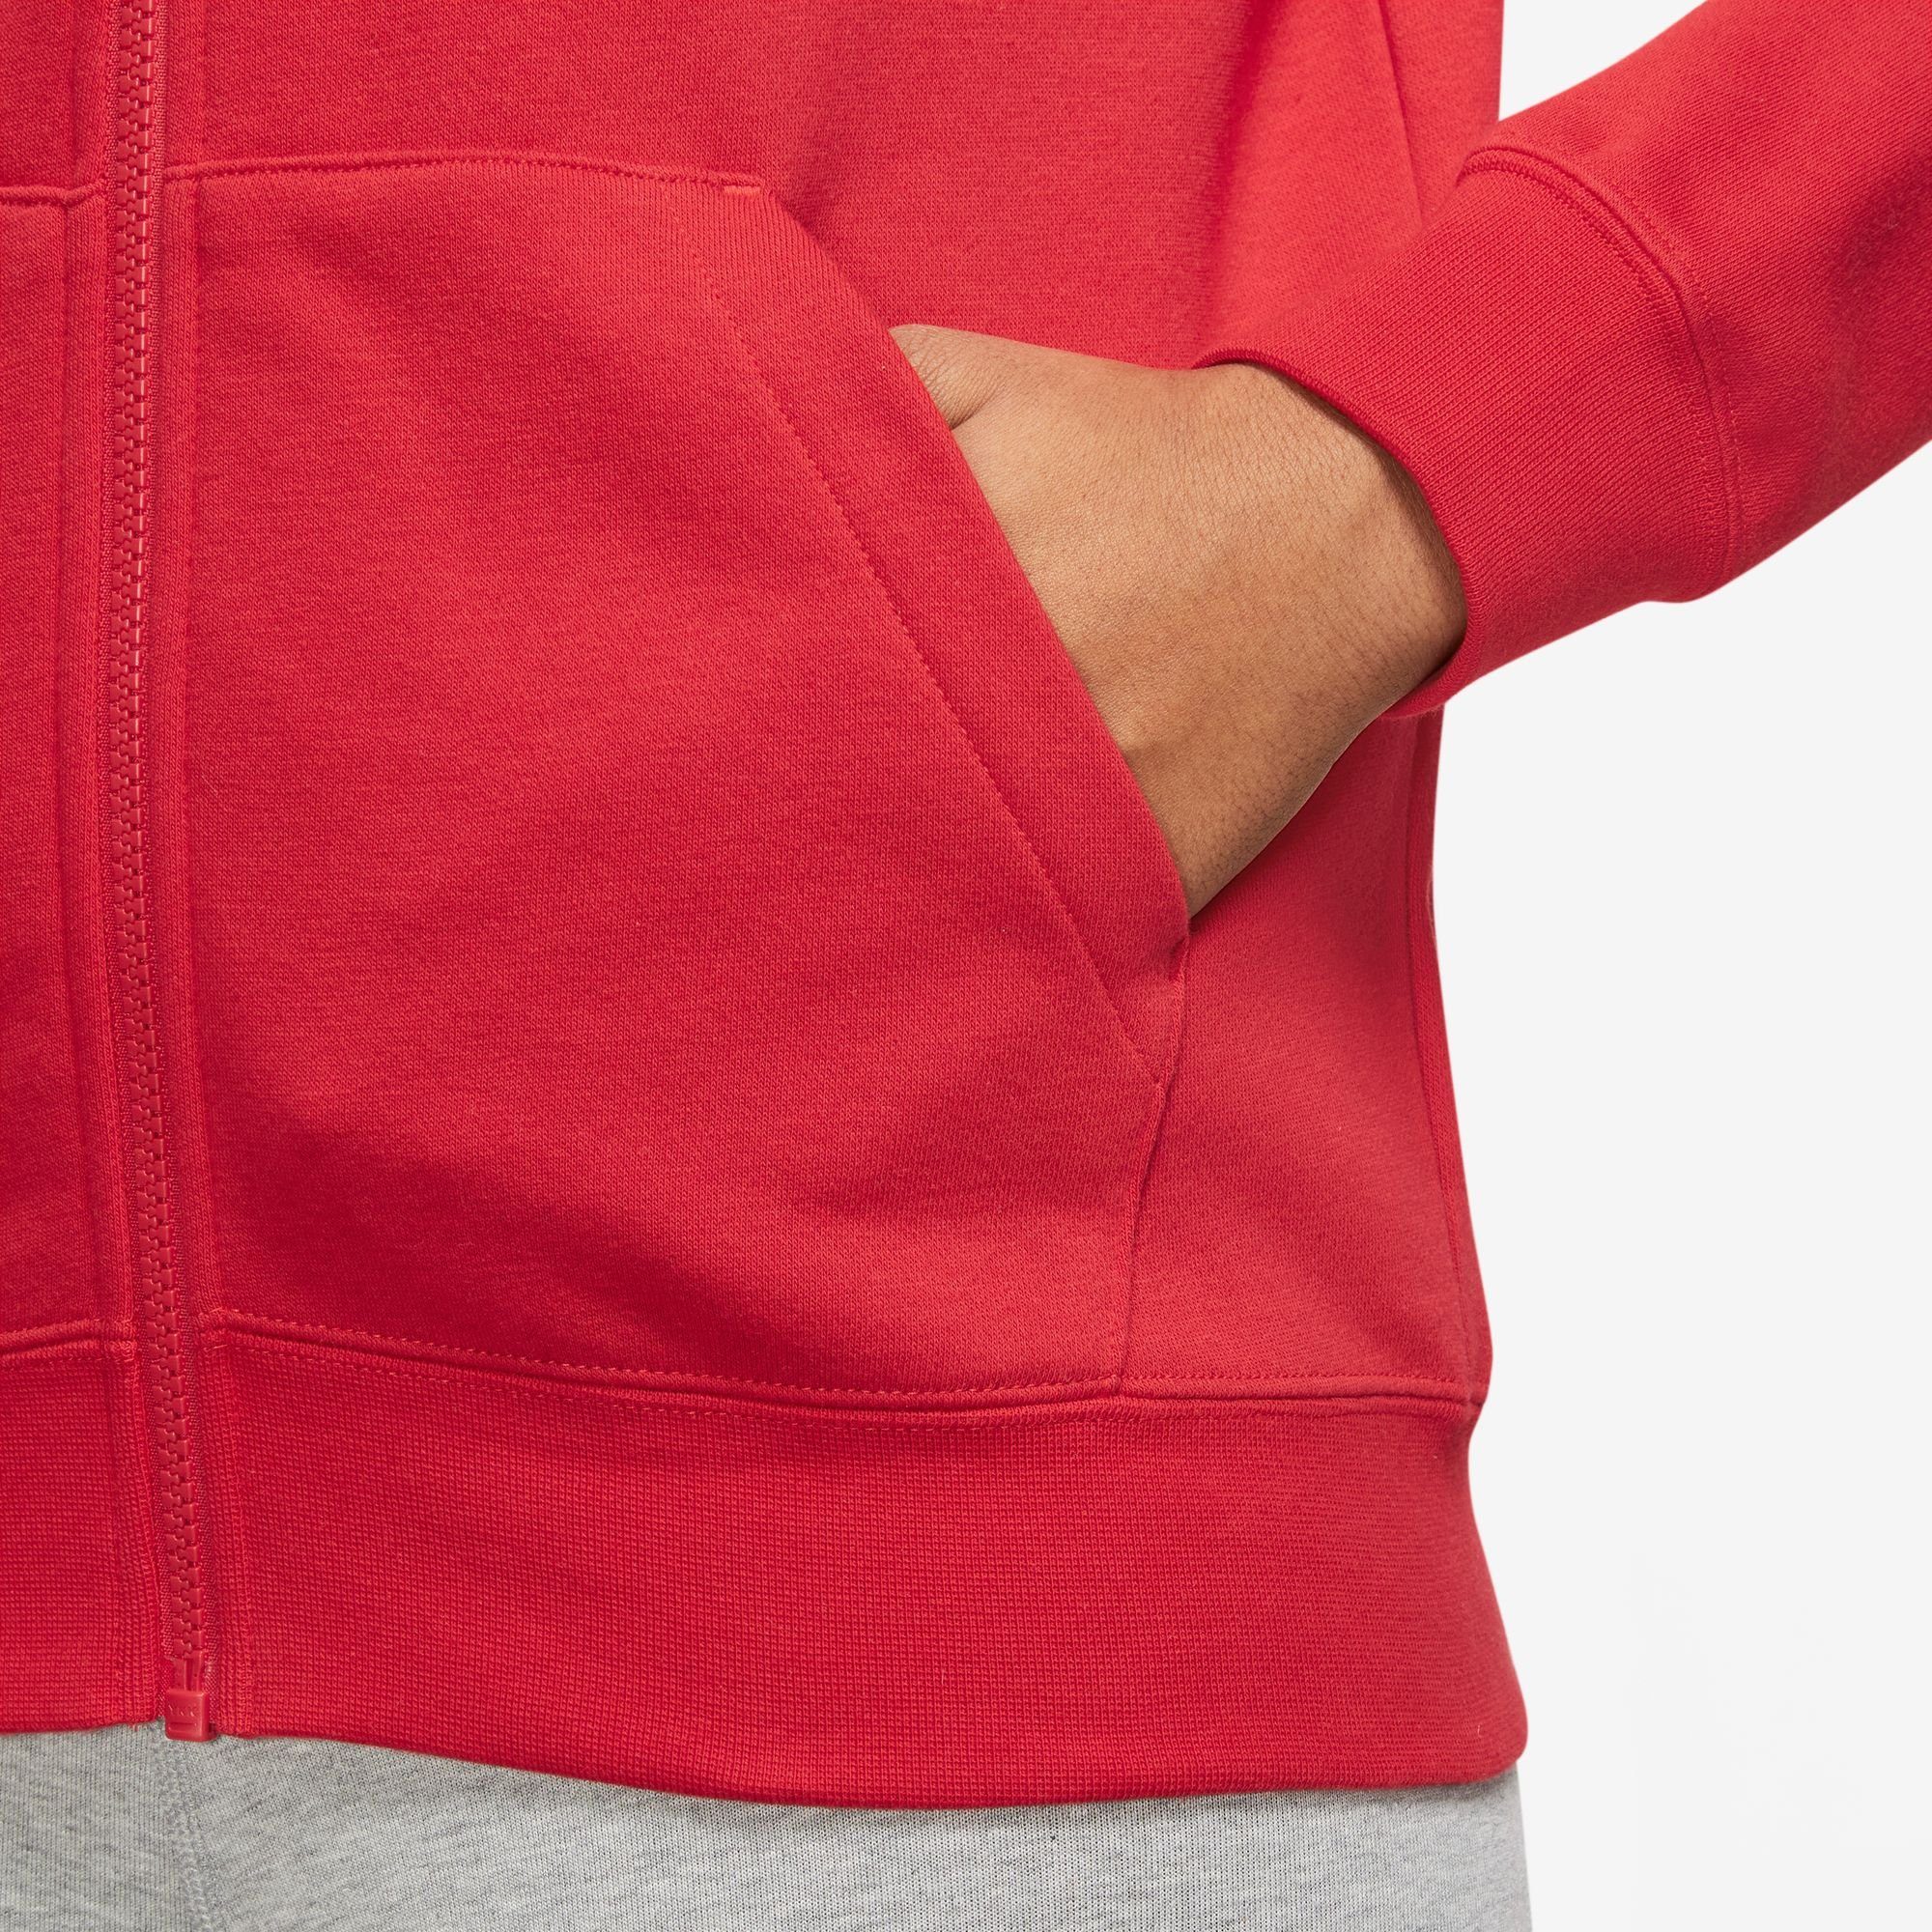 RED/WHITE Fleece Club Hoodie Nike Sportswear Full-Zip Kapuzensweatjacke UNIVERSITY Women's